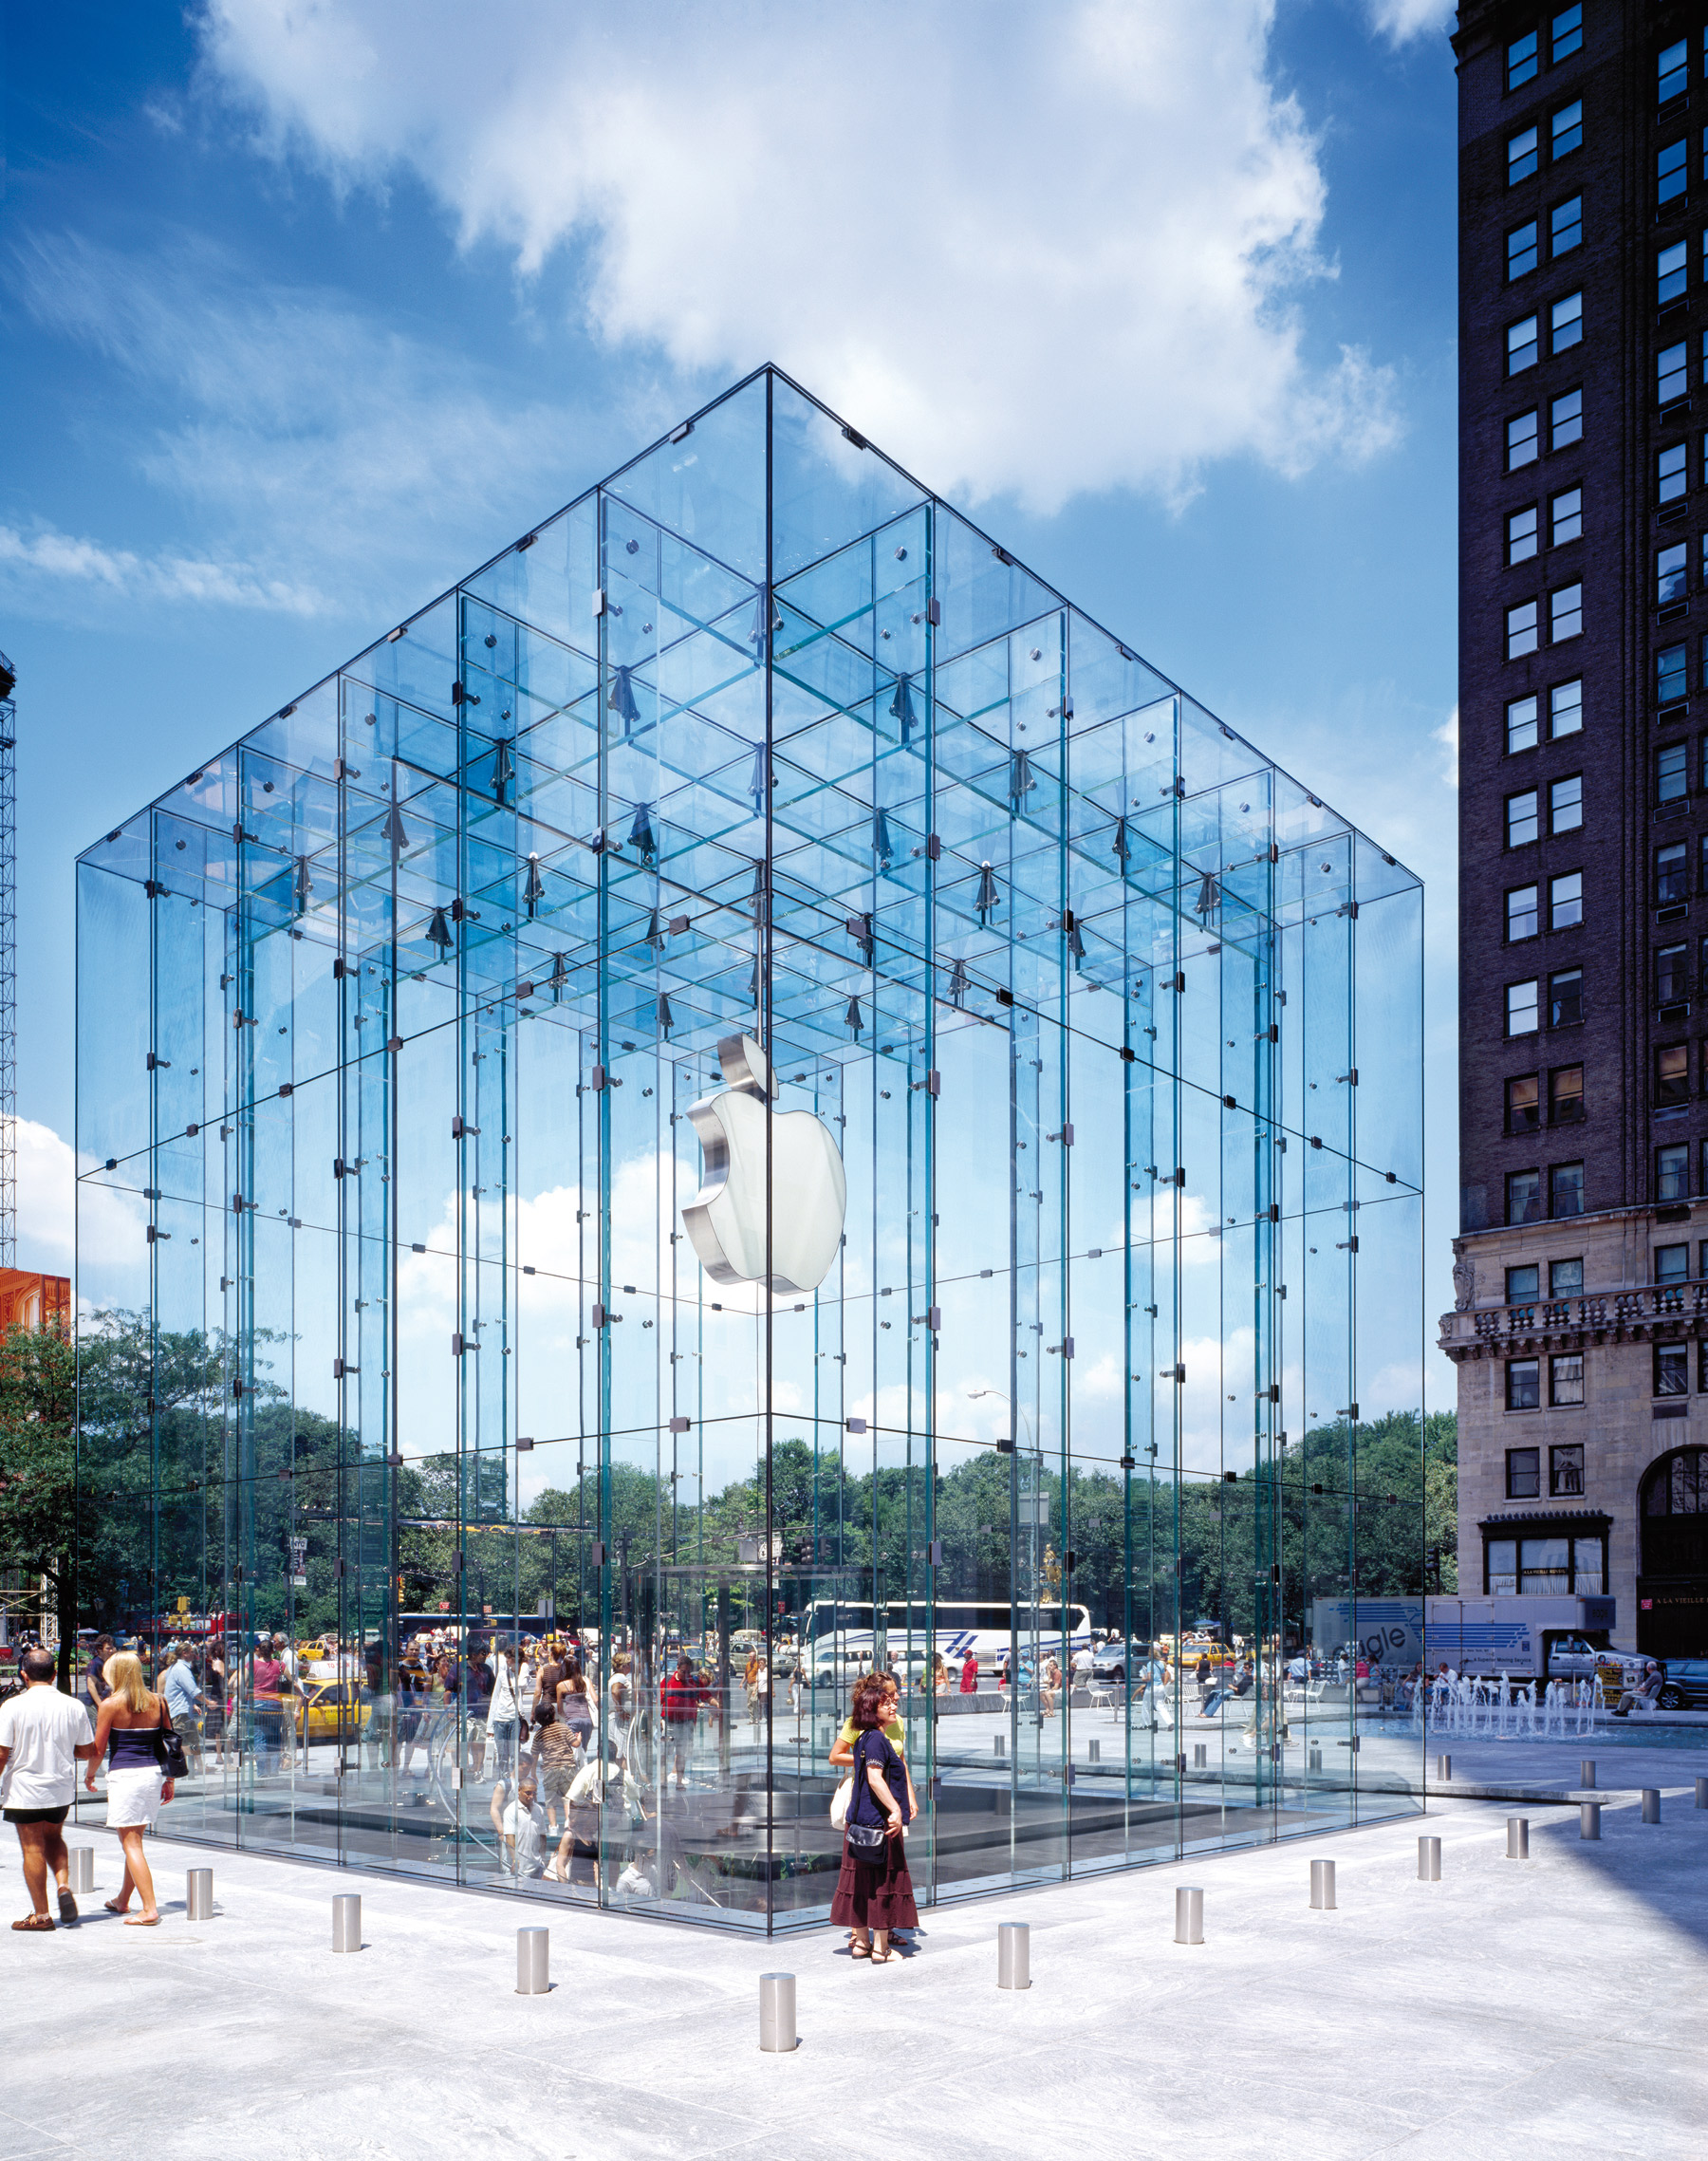 Luxusní budova společnosti Apple, krychle na 5. avenue, 2006, USA, New York. Když Bohlin Cywinski Jackson dokončil v roce 2006 svůj první projekt, získal si okamžitě celosvětovou pozornost. Již tehdy inovativní skleněné výrobky společnosti Sedak na tomto mistrovském díle vedly k předefinování hranic technické proveditelnosti v strukturálním skelném inženýrství. Foto: ©sedak GmbH & Co. KG